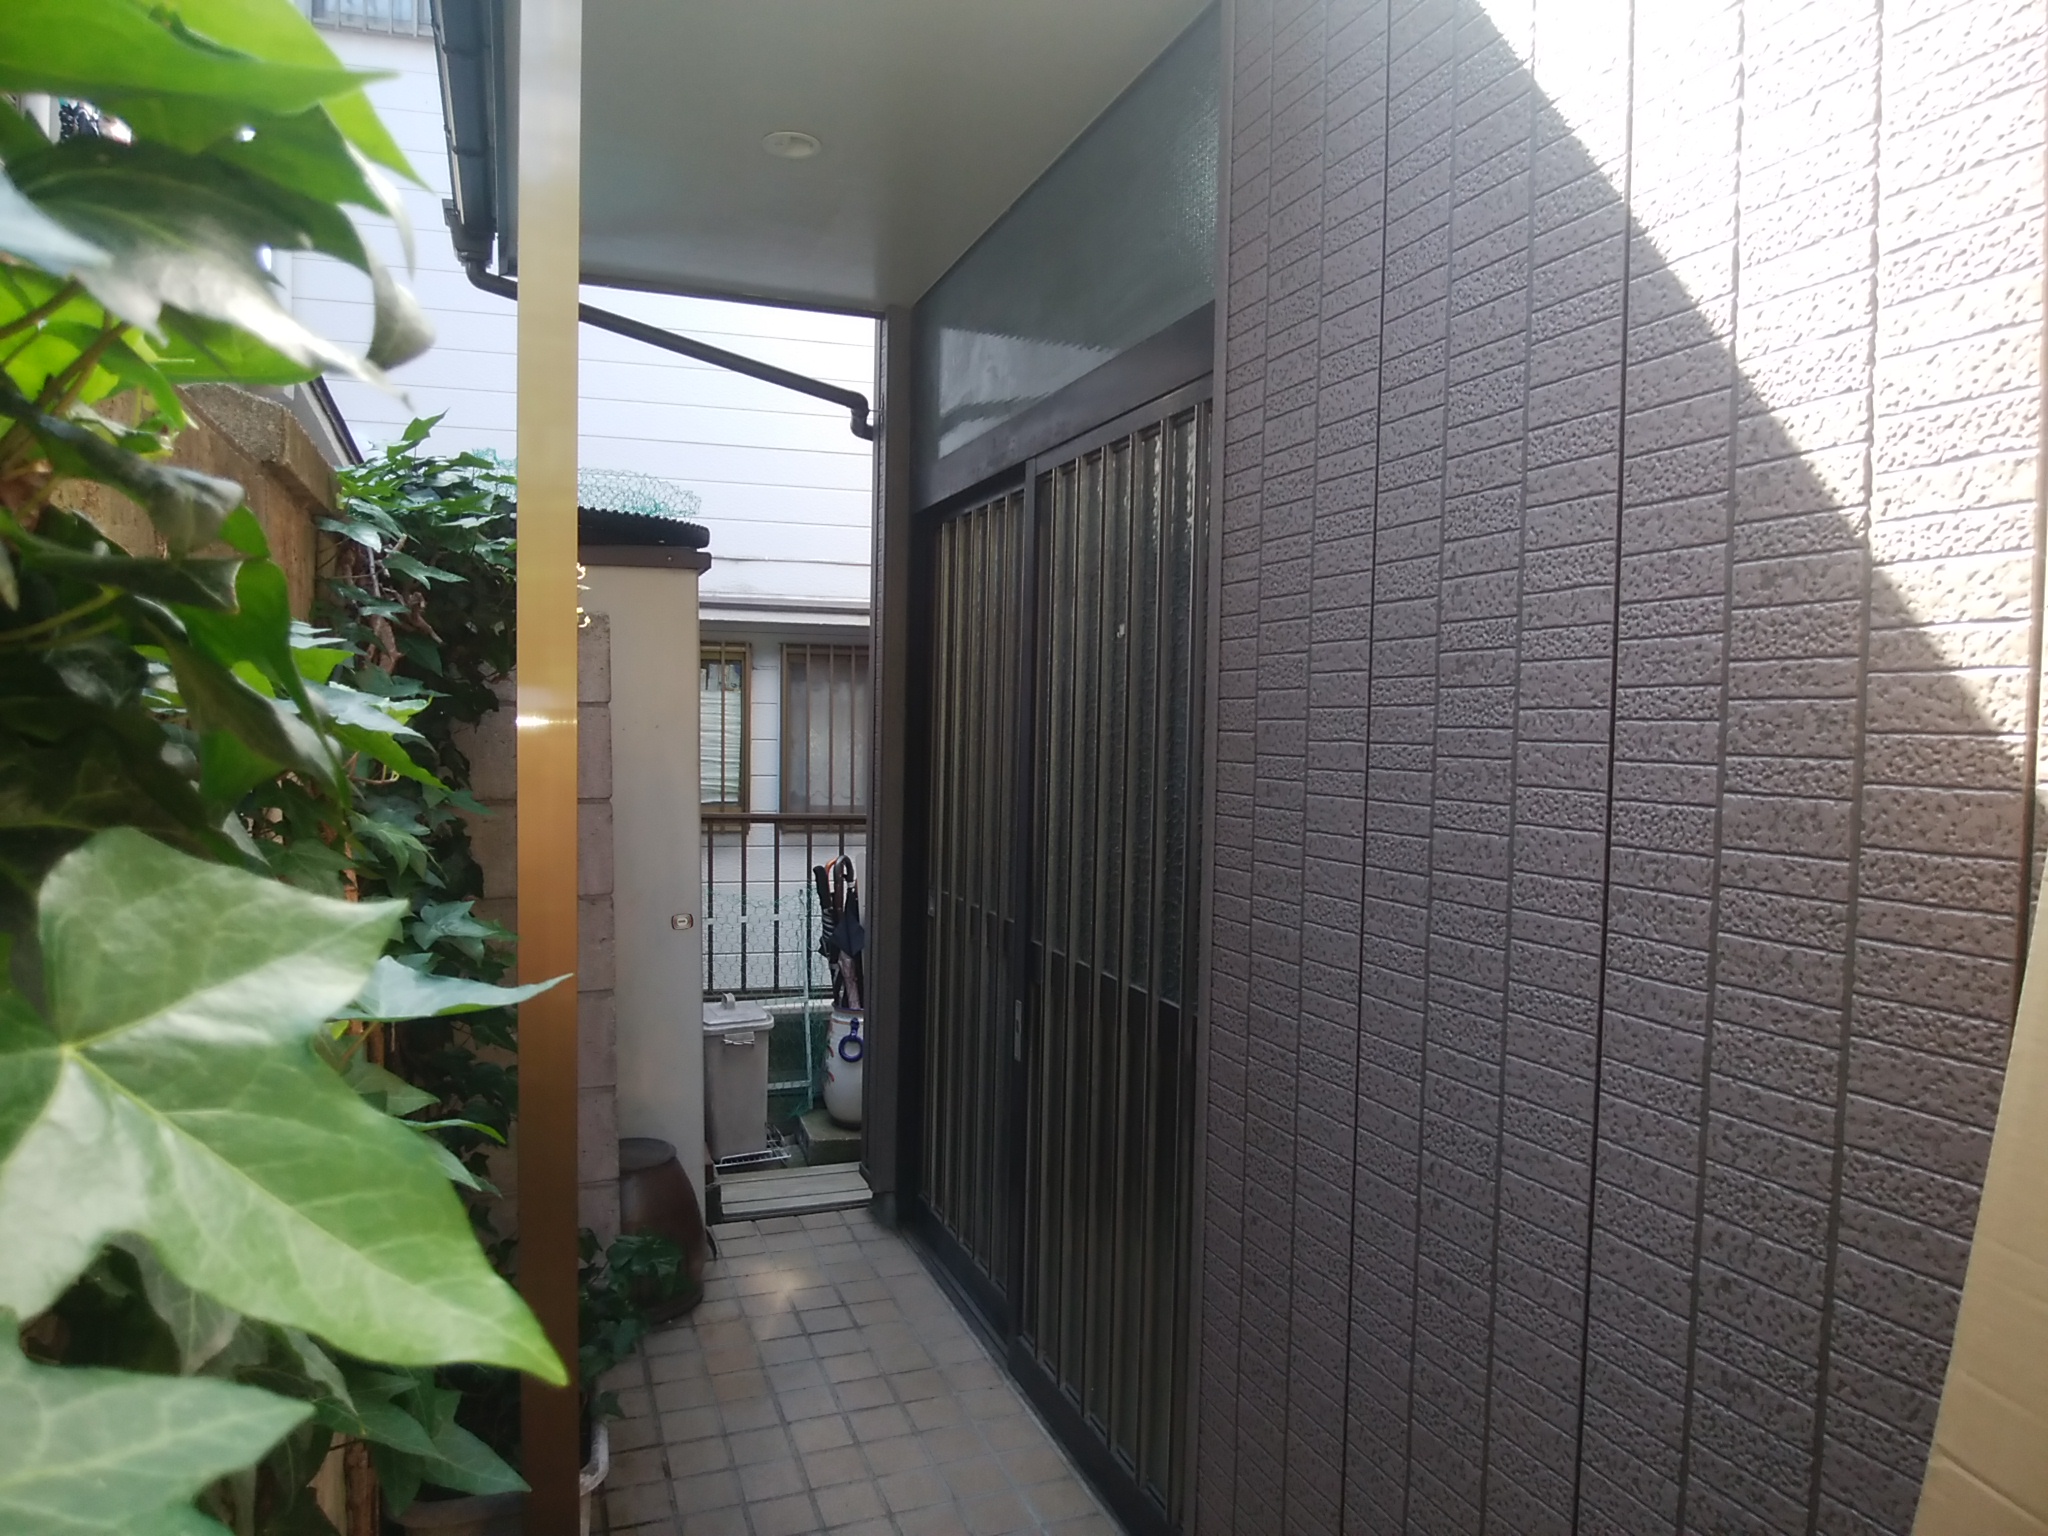 ダイワハウスの玄関引戸をリフォーム Lixilリシェント14型 千葉県松戸市の工事事例 玄関ドアのリフォームなら玄関ドアマイスターへお任せください